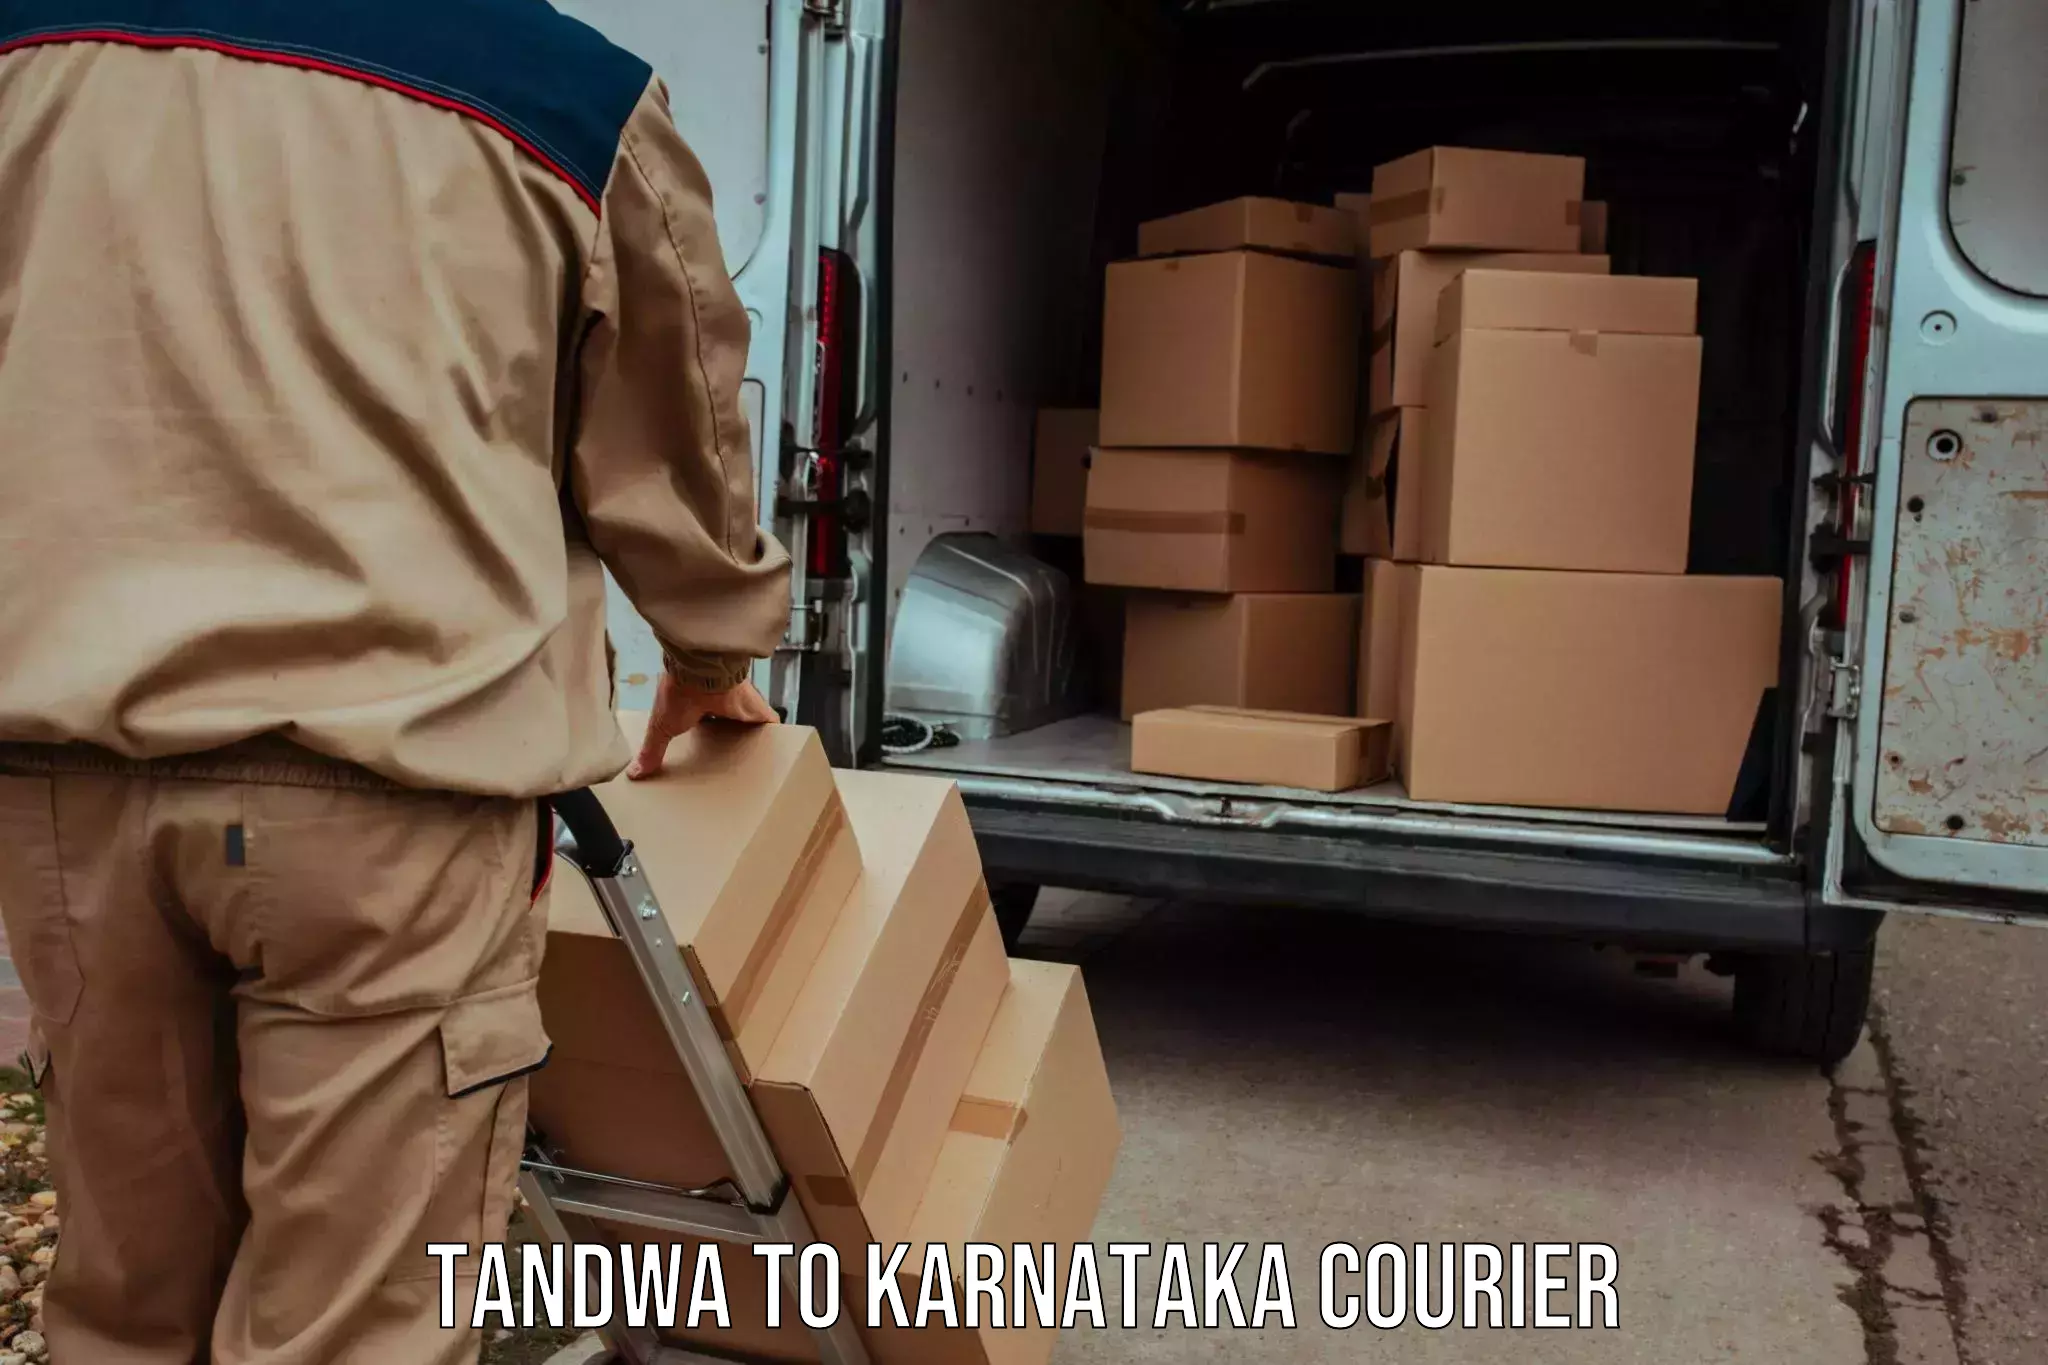 State-of-the-art courier technology Tandwa to Saundatti Yallamma